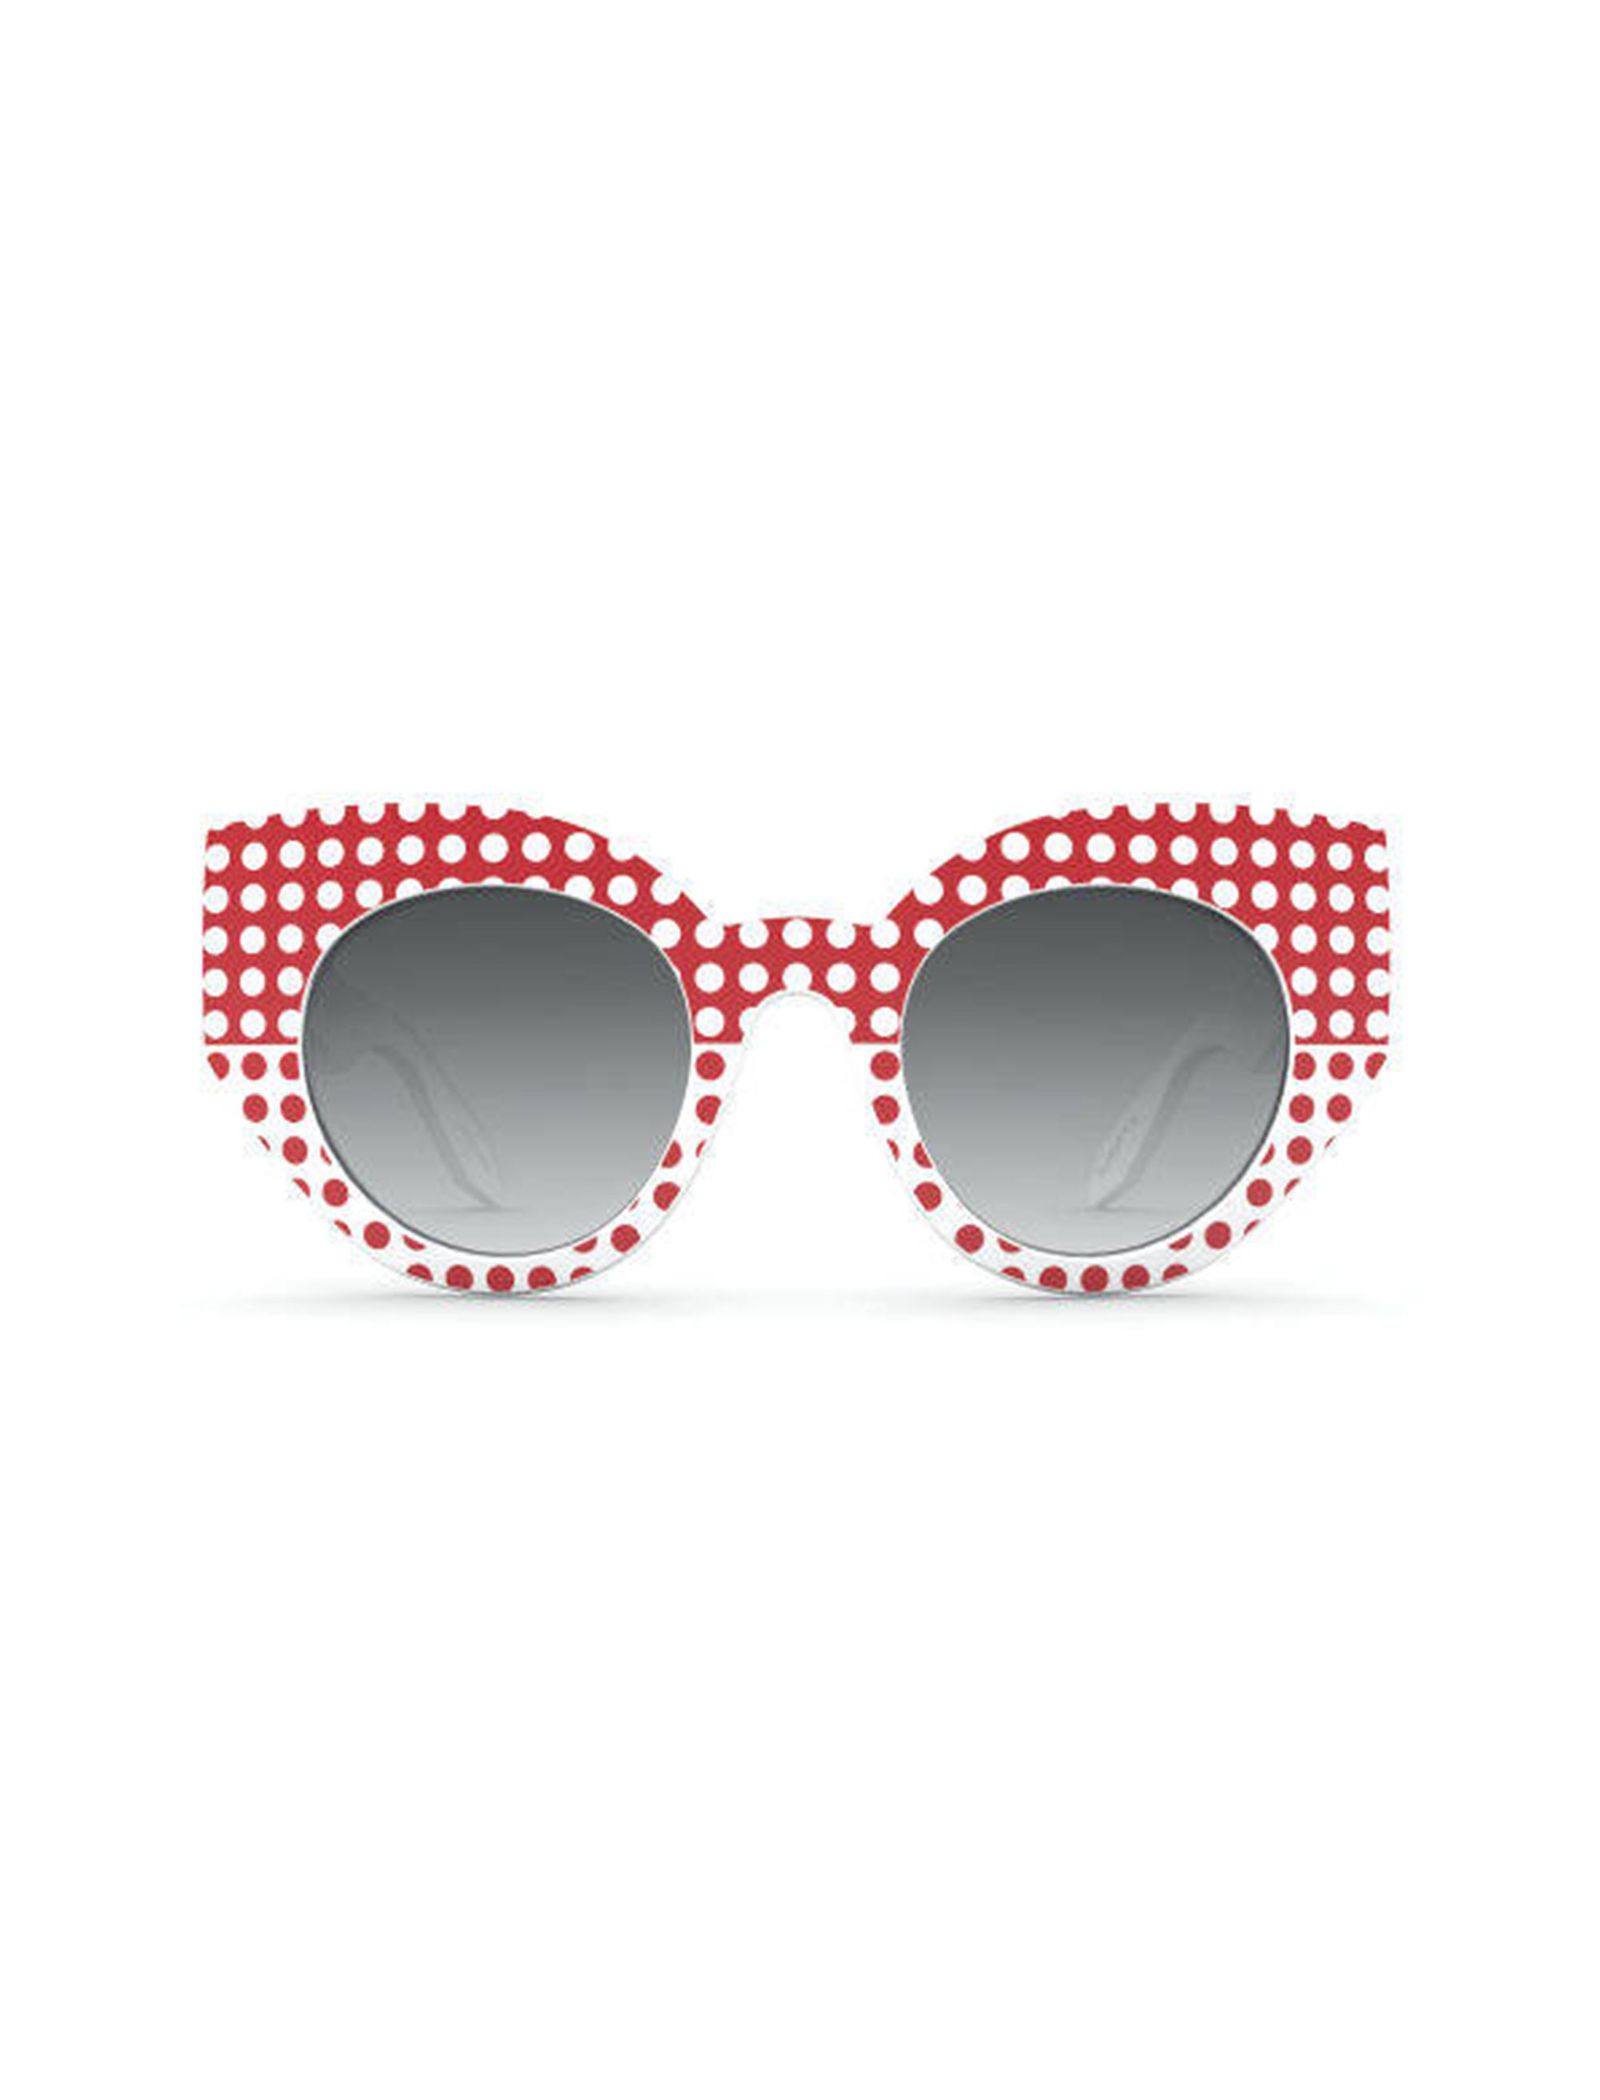 عینک آفتابی گربه ای زنانه - سواچ - سفيد و قرمز - 2